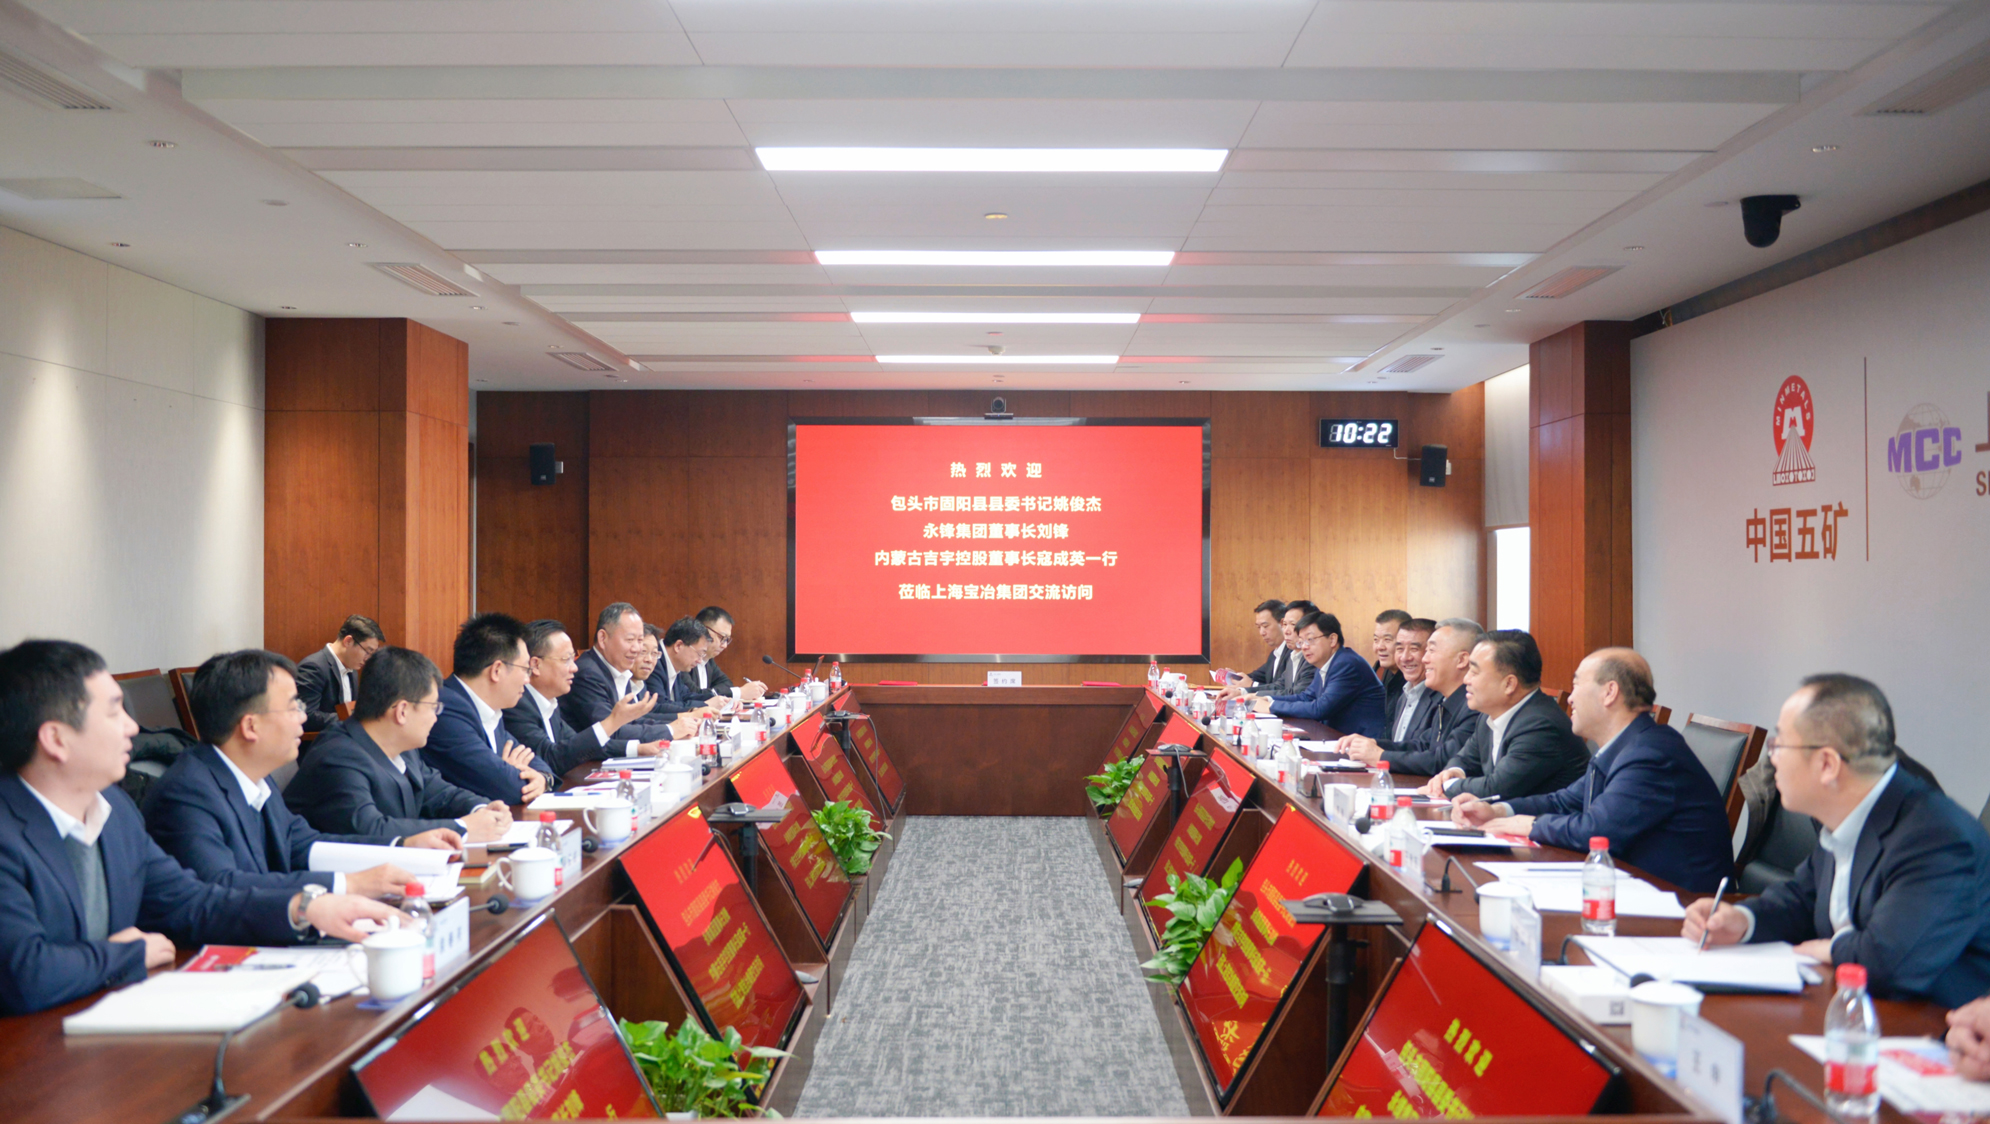 上海尊龙凯时与永锋集团、内蒙古吉宇控股签署战略相助协议